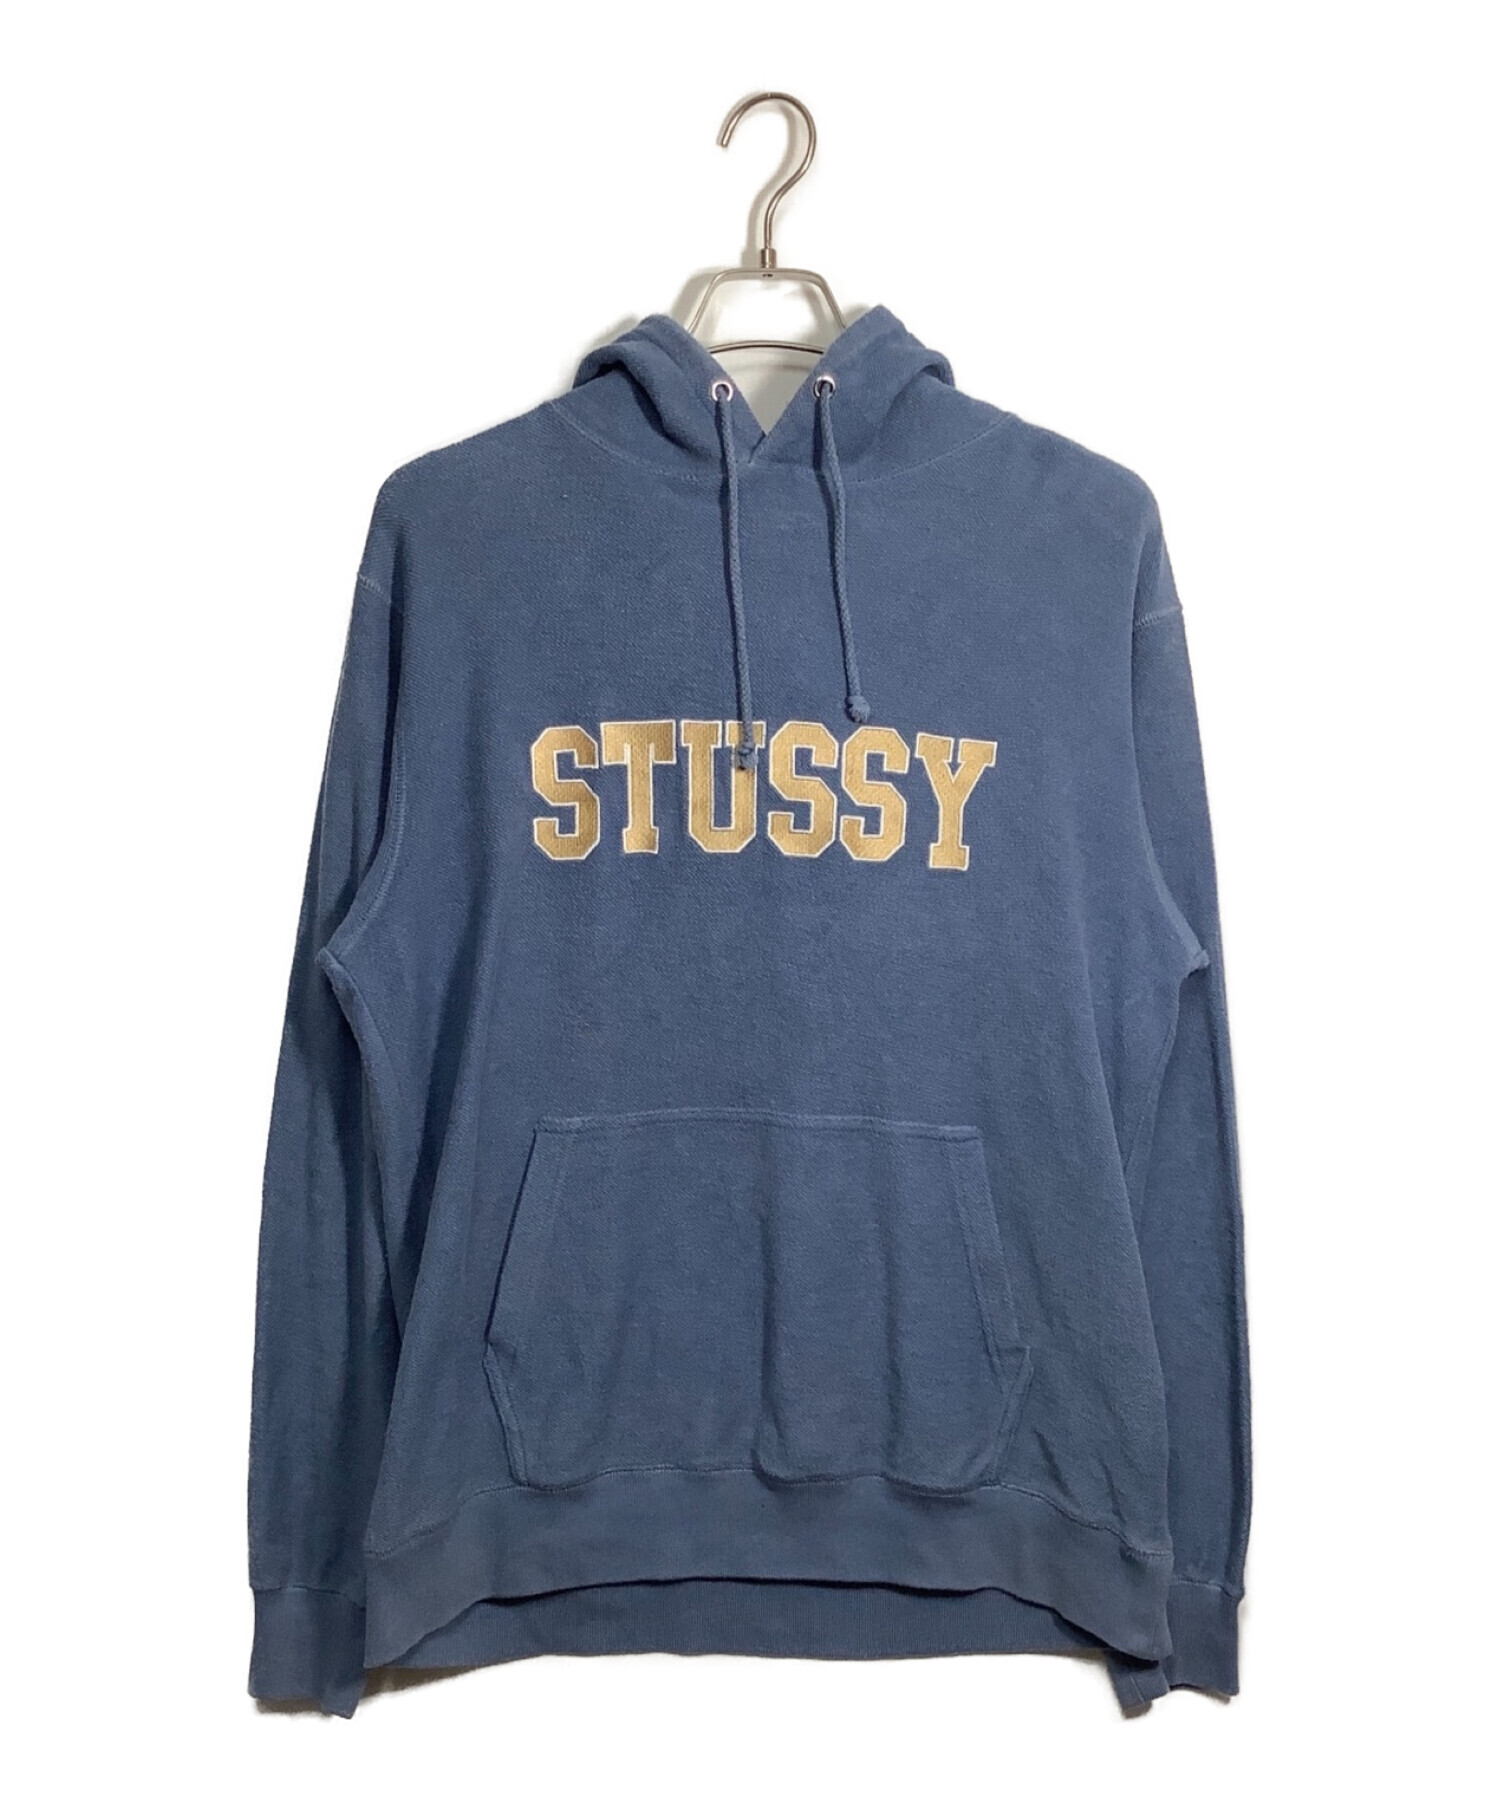 stussy (ステューシー) ロゴパーカー ブルー サイズ:L